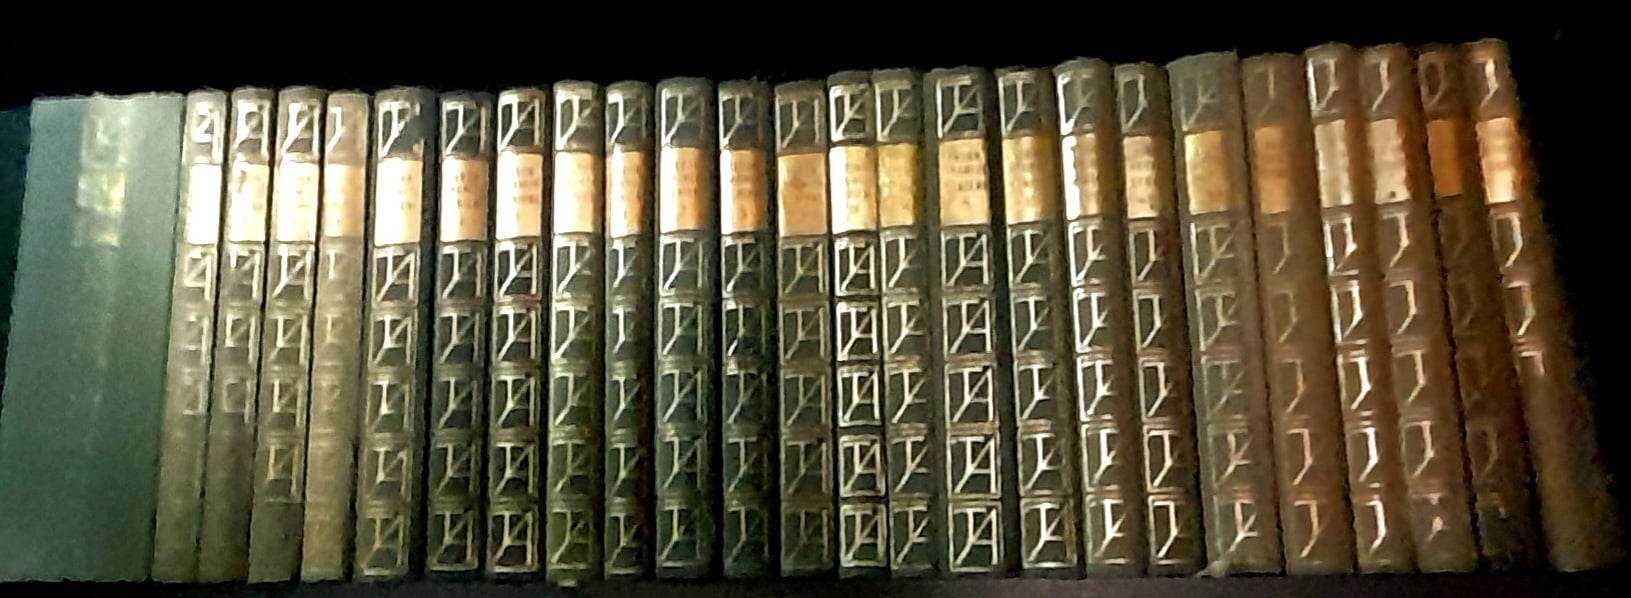 25 vol. Colectia SCRIERI de Tudor Arghezi, editia de Lux